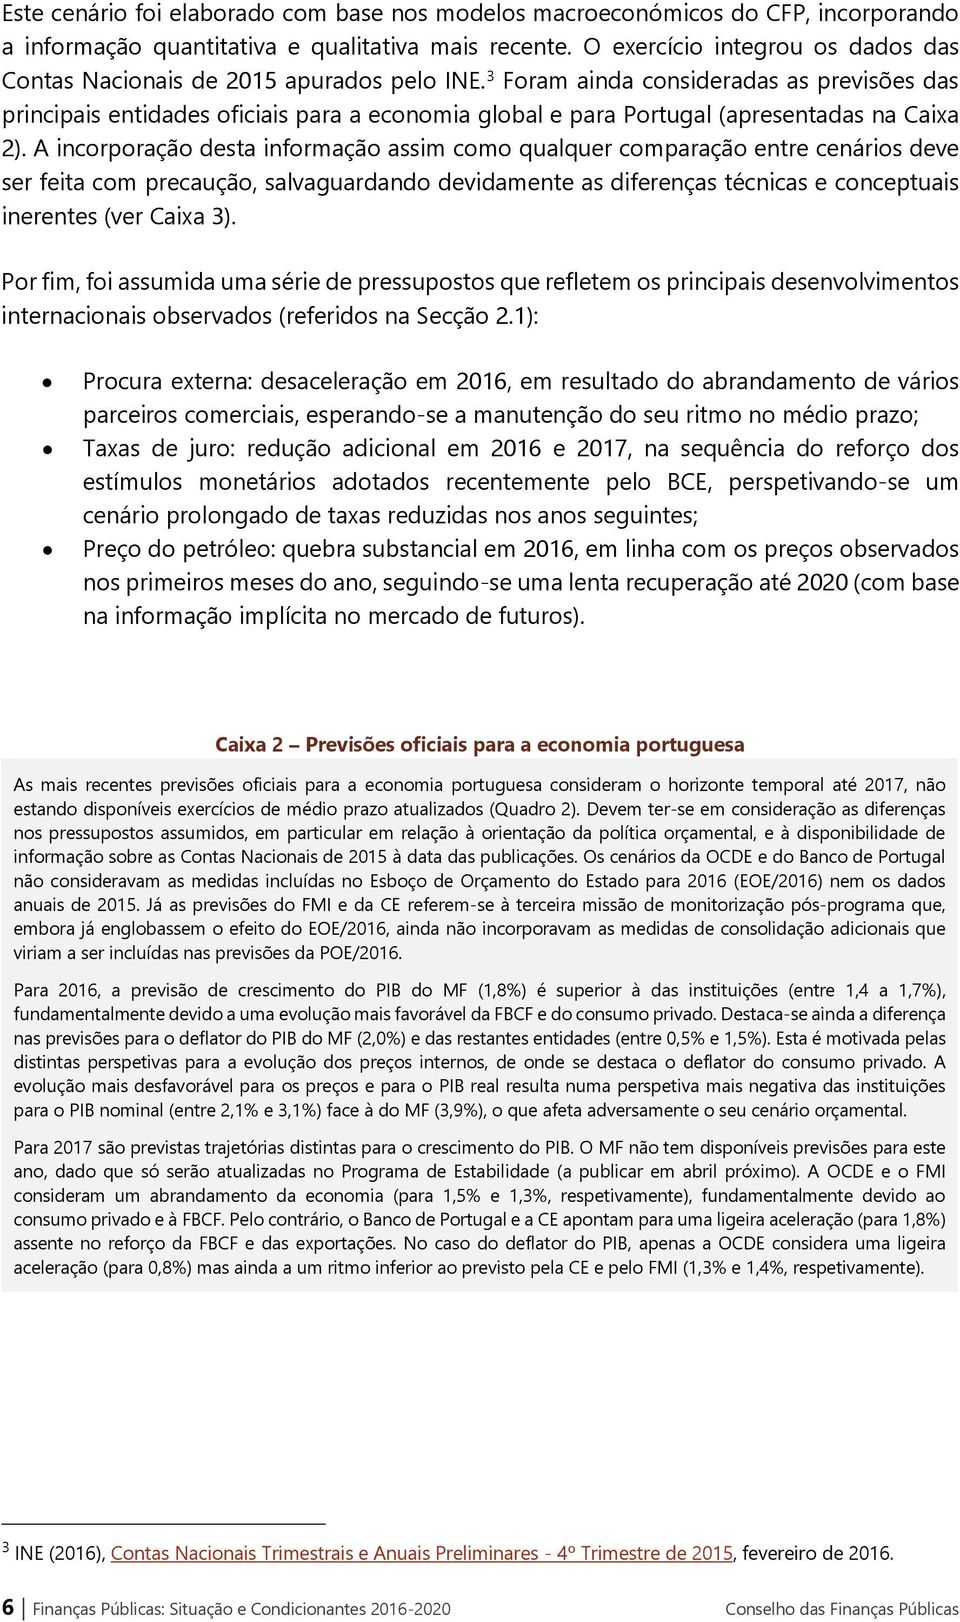 3 Foram ainda consideradas as previsões das principais entidades oficiais para a economia global e para Portugal (apresentadas na Caixa 2).